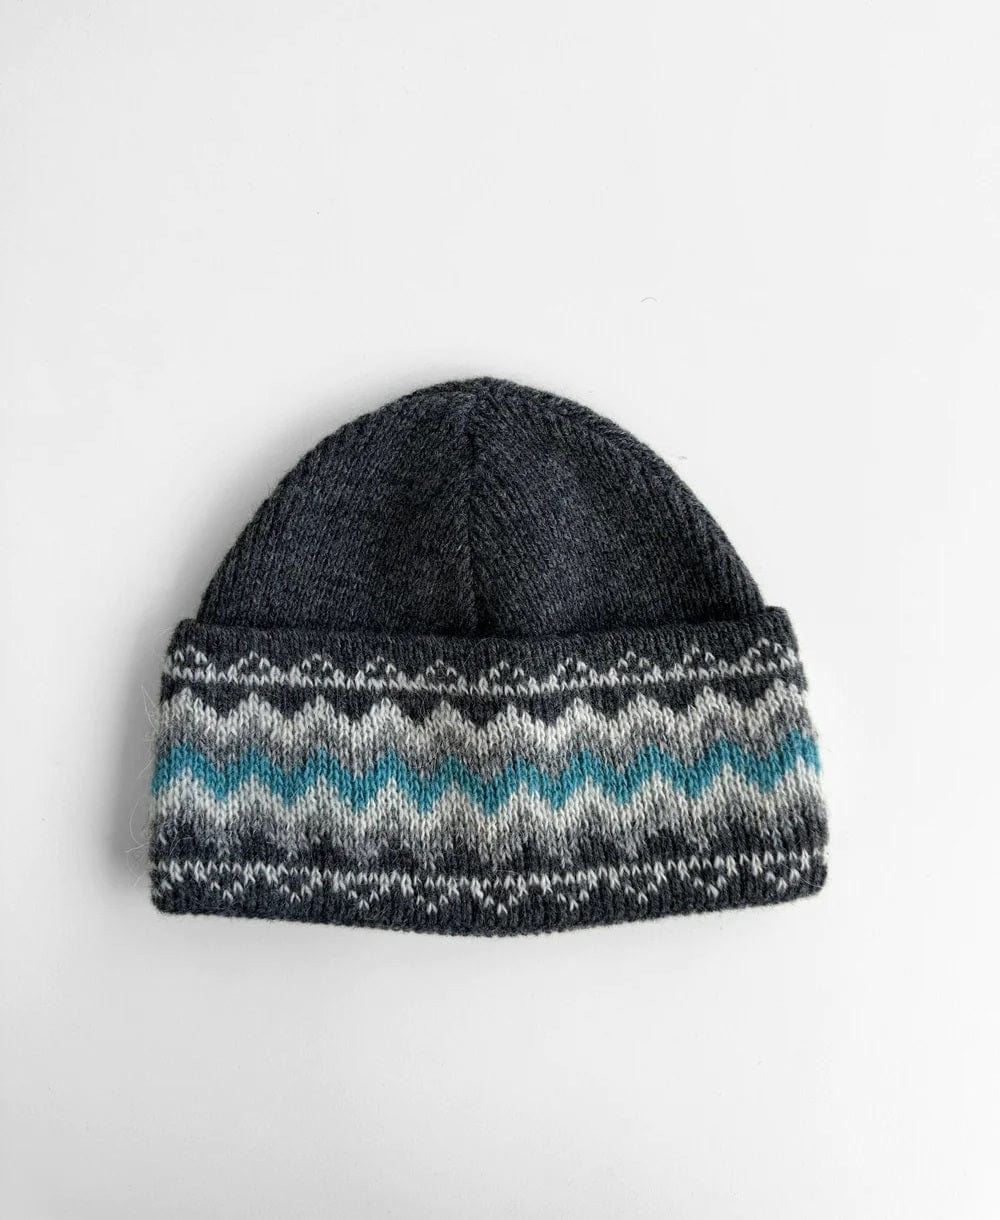 Woolen Headband Grey/Blue - Fanney - The Icelandic Store